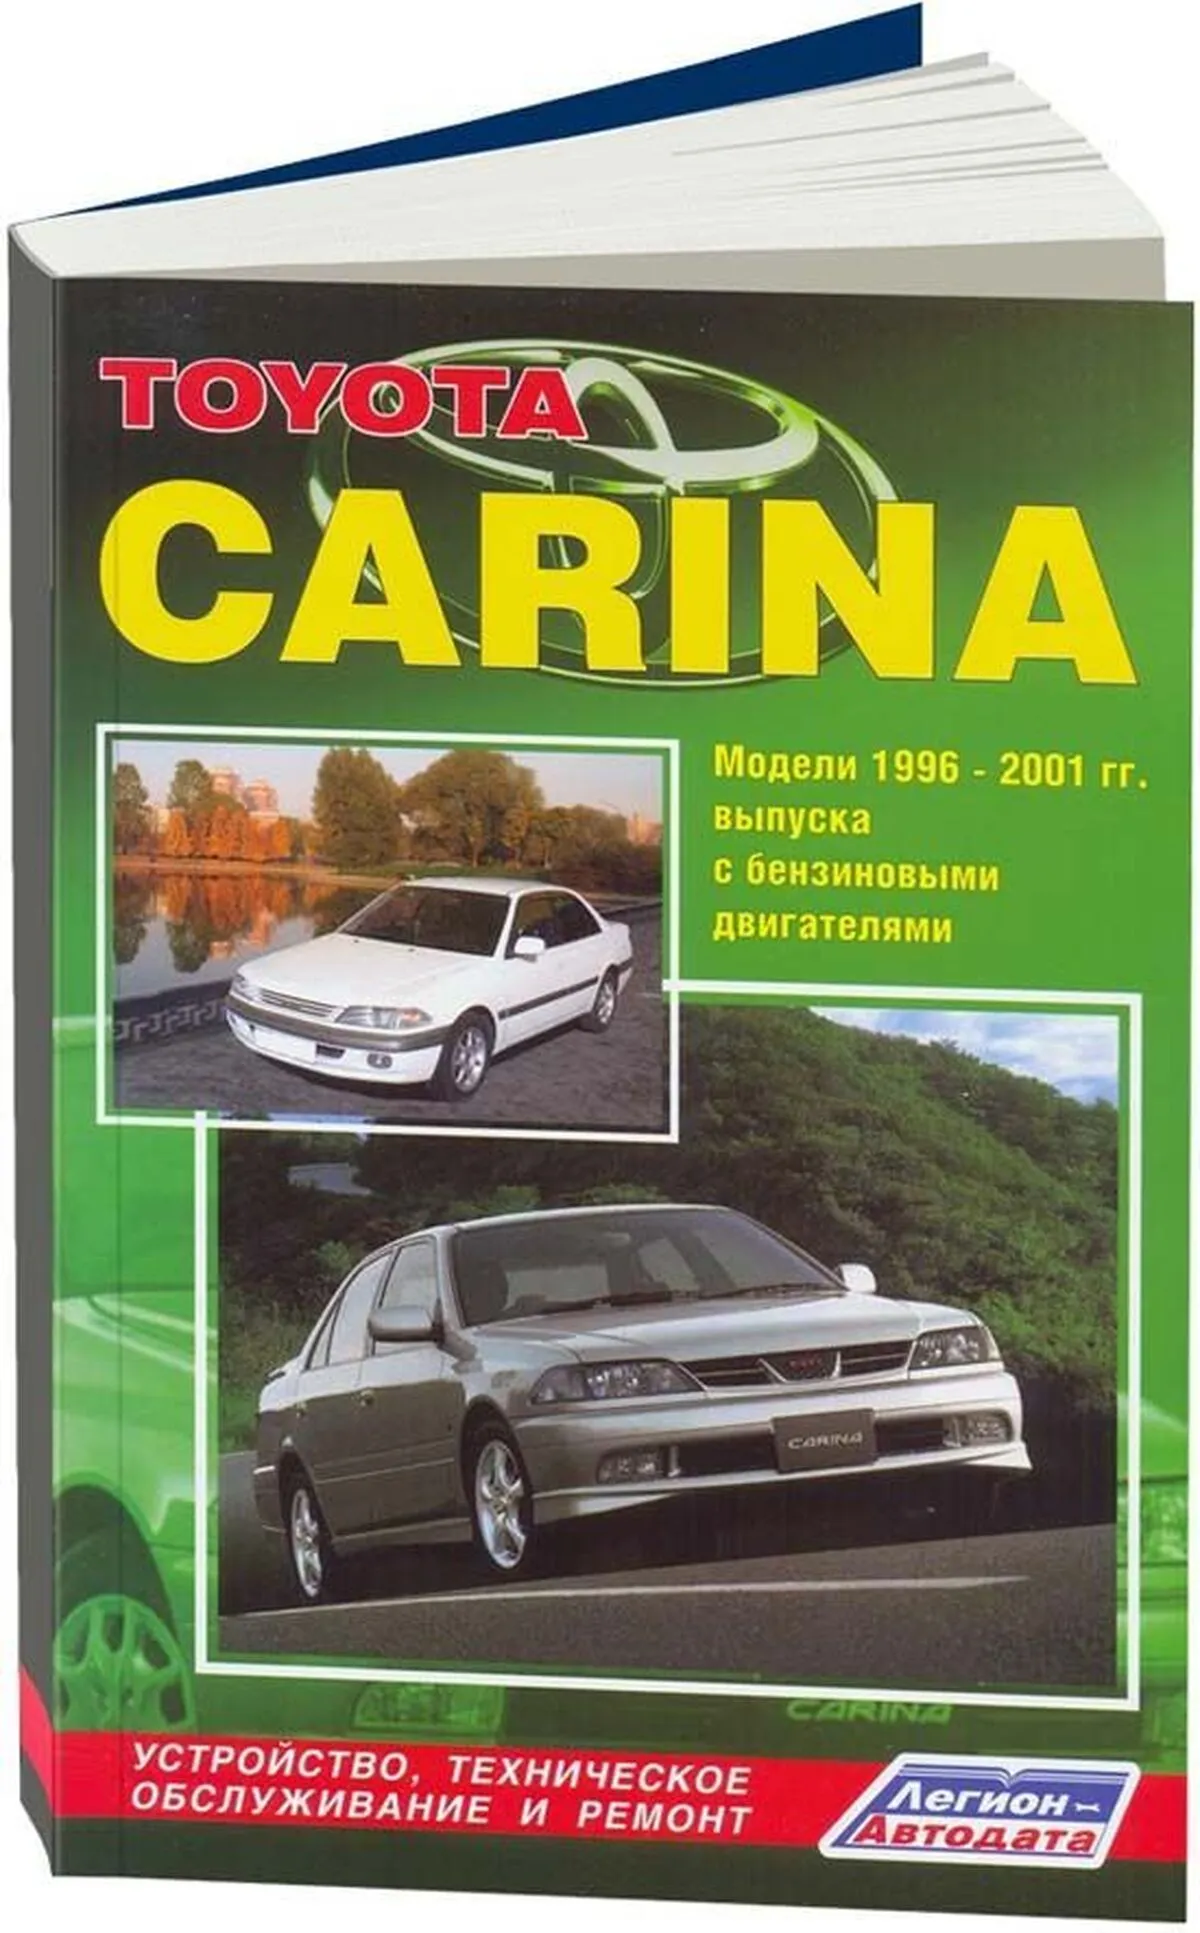 Книга: TOYOTA CARINA (б) 1996-2001 г.в., рем., экспл., то | Легион-Aвтодата